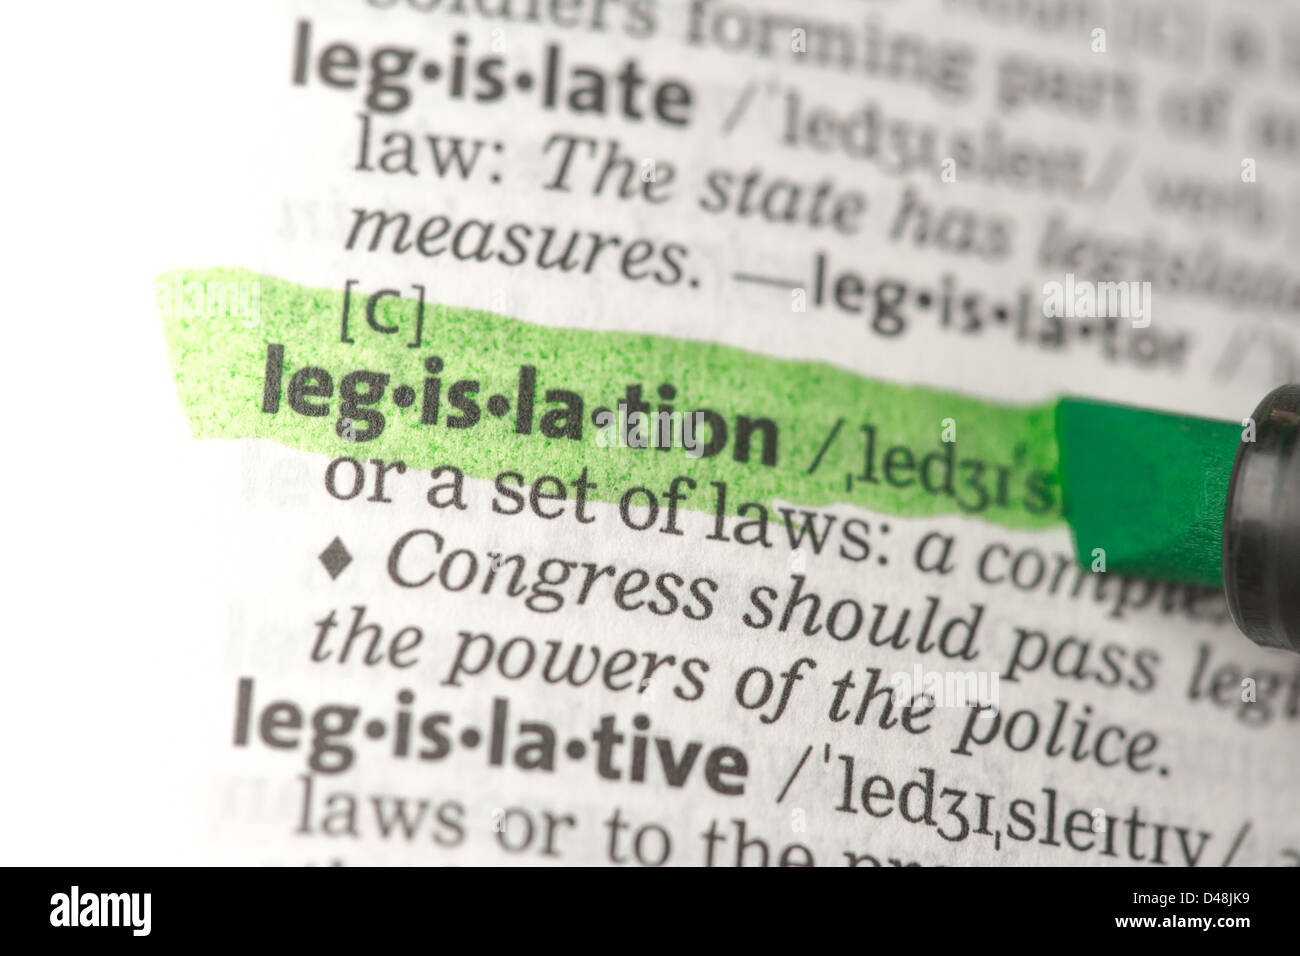 Definición de legislación resaltada en verde Foto de stock